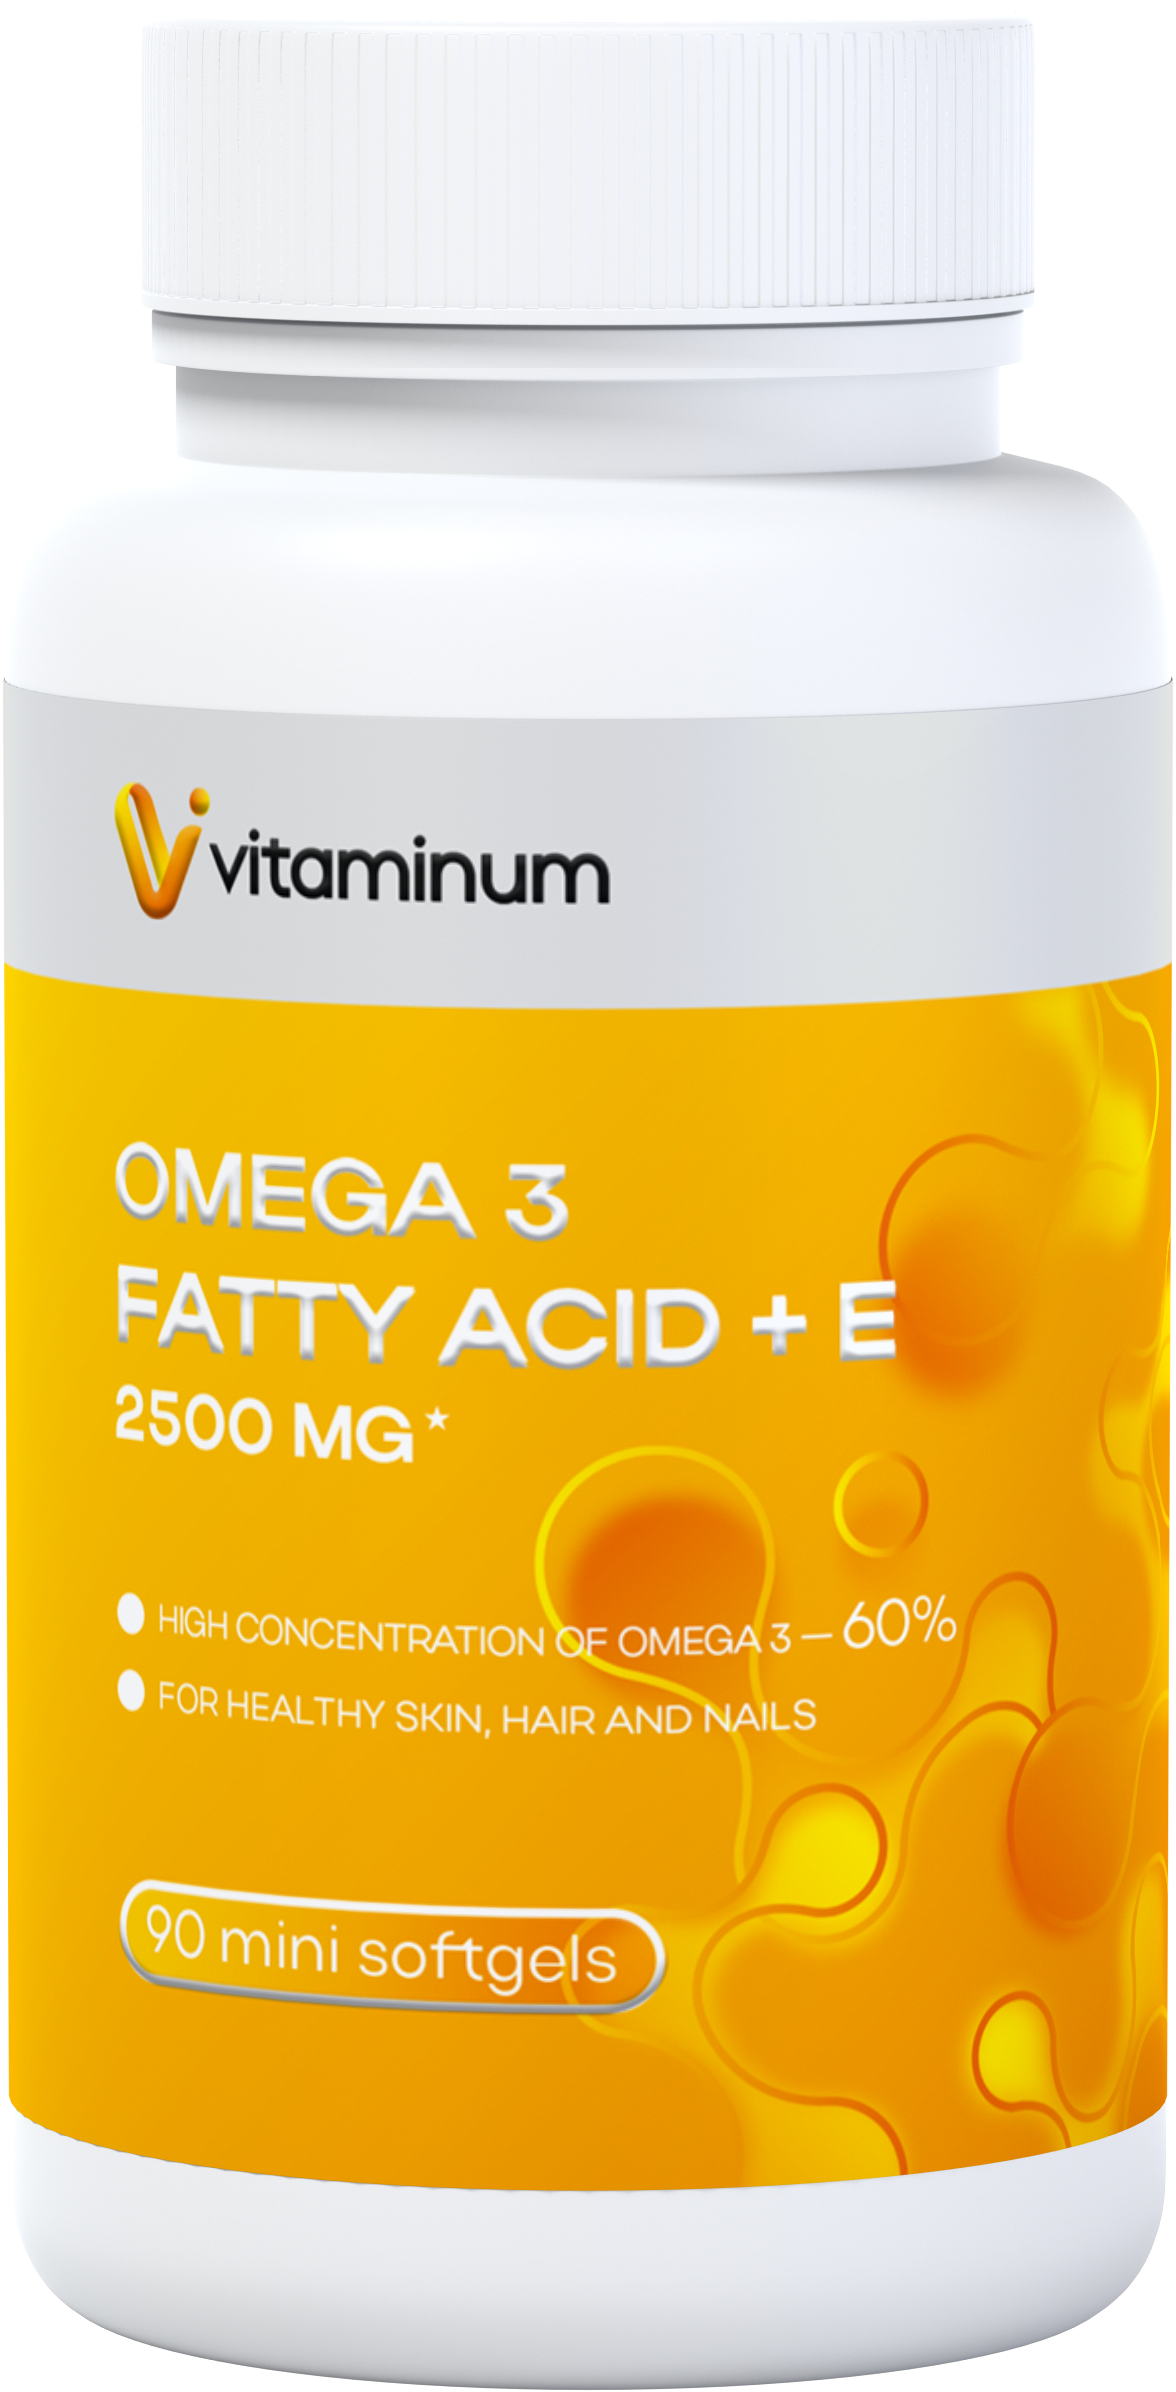  Vitaminum ОМЕГА 3 60% + витамин Е (2500 MG*) 90 капсул 700 мг   в Славянске-на-Кубани